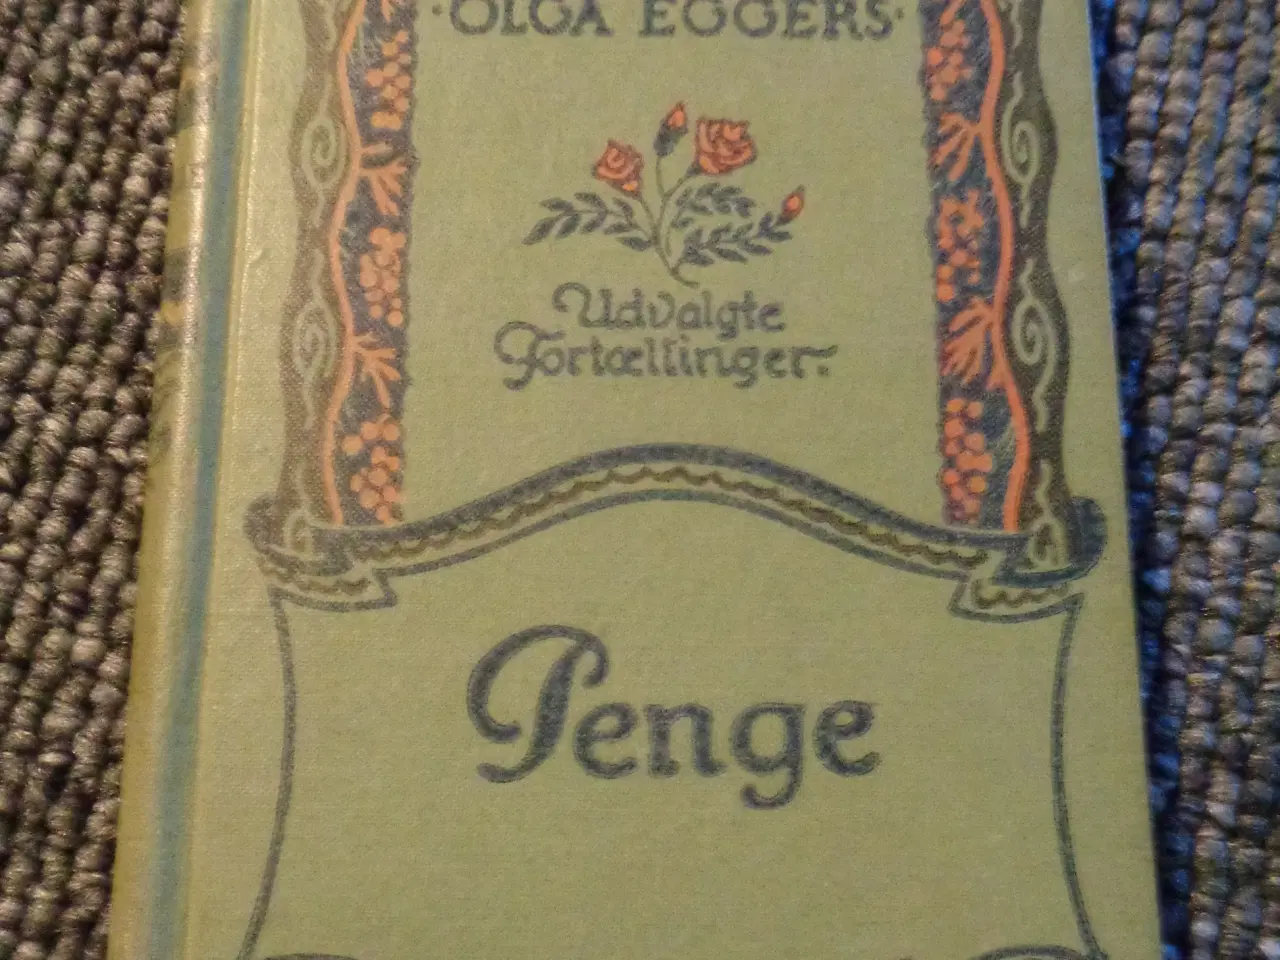 Billede 6 - Olga Eggers bøger 